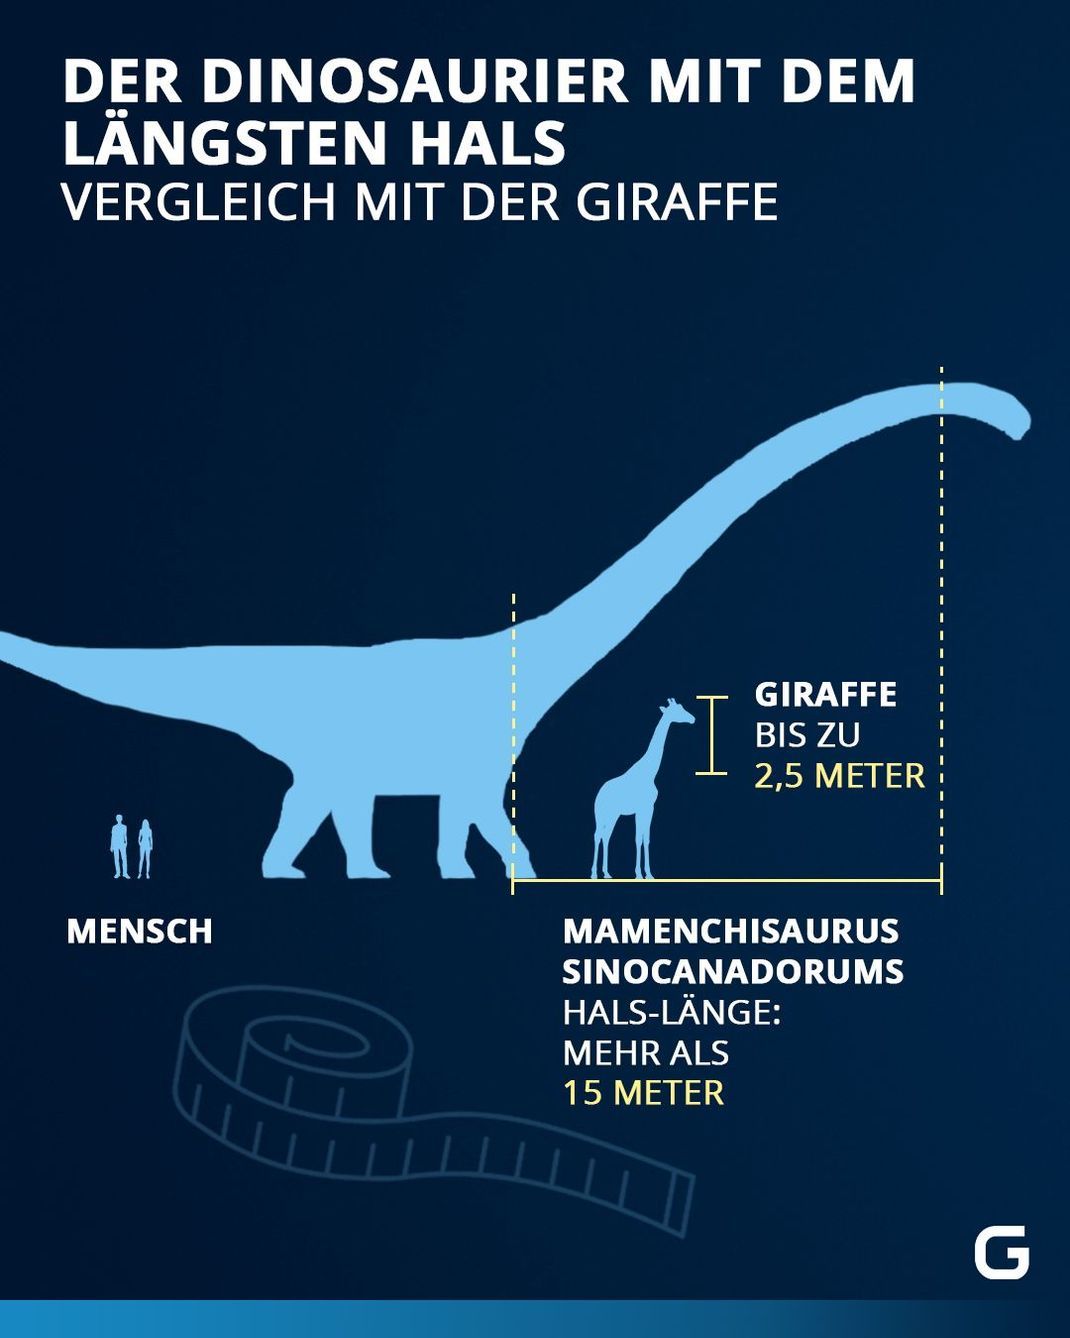 Vergleich zwischen den Hälsen von dem Mamenchisaurus sinocanadorums und der Giraffe und der Durchschnittsgröße der deutschen Männer und Frauen